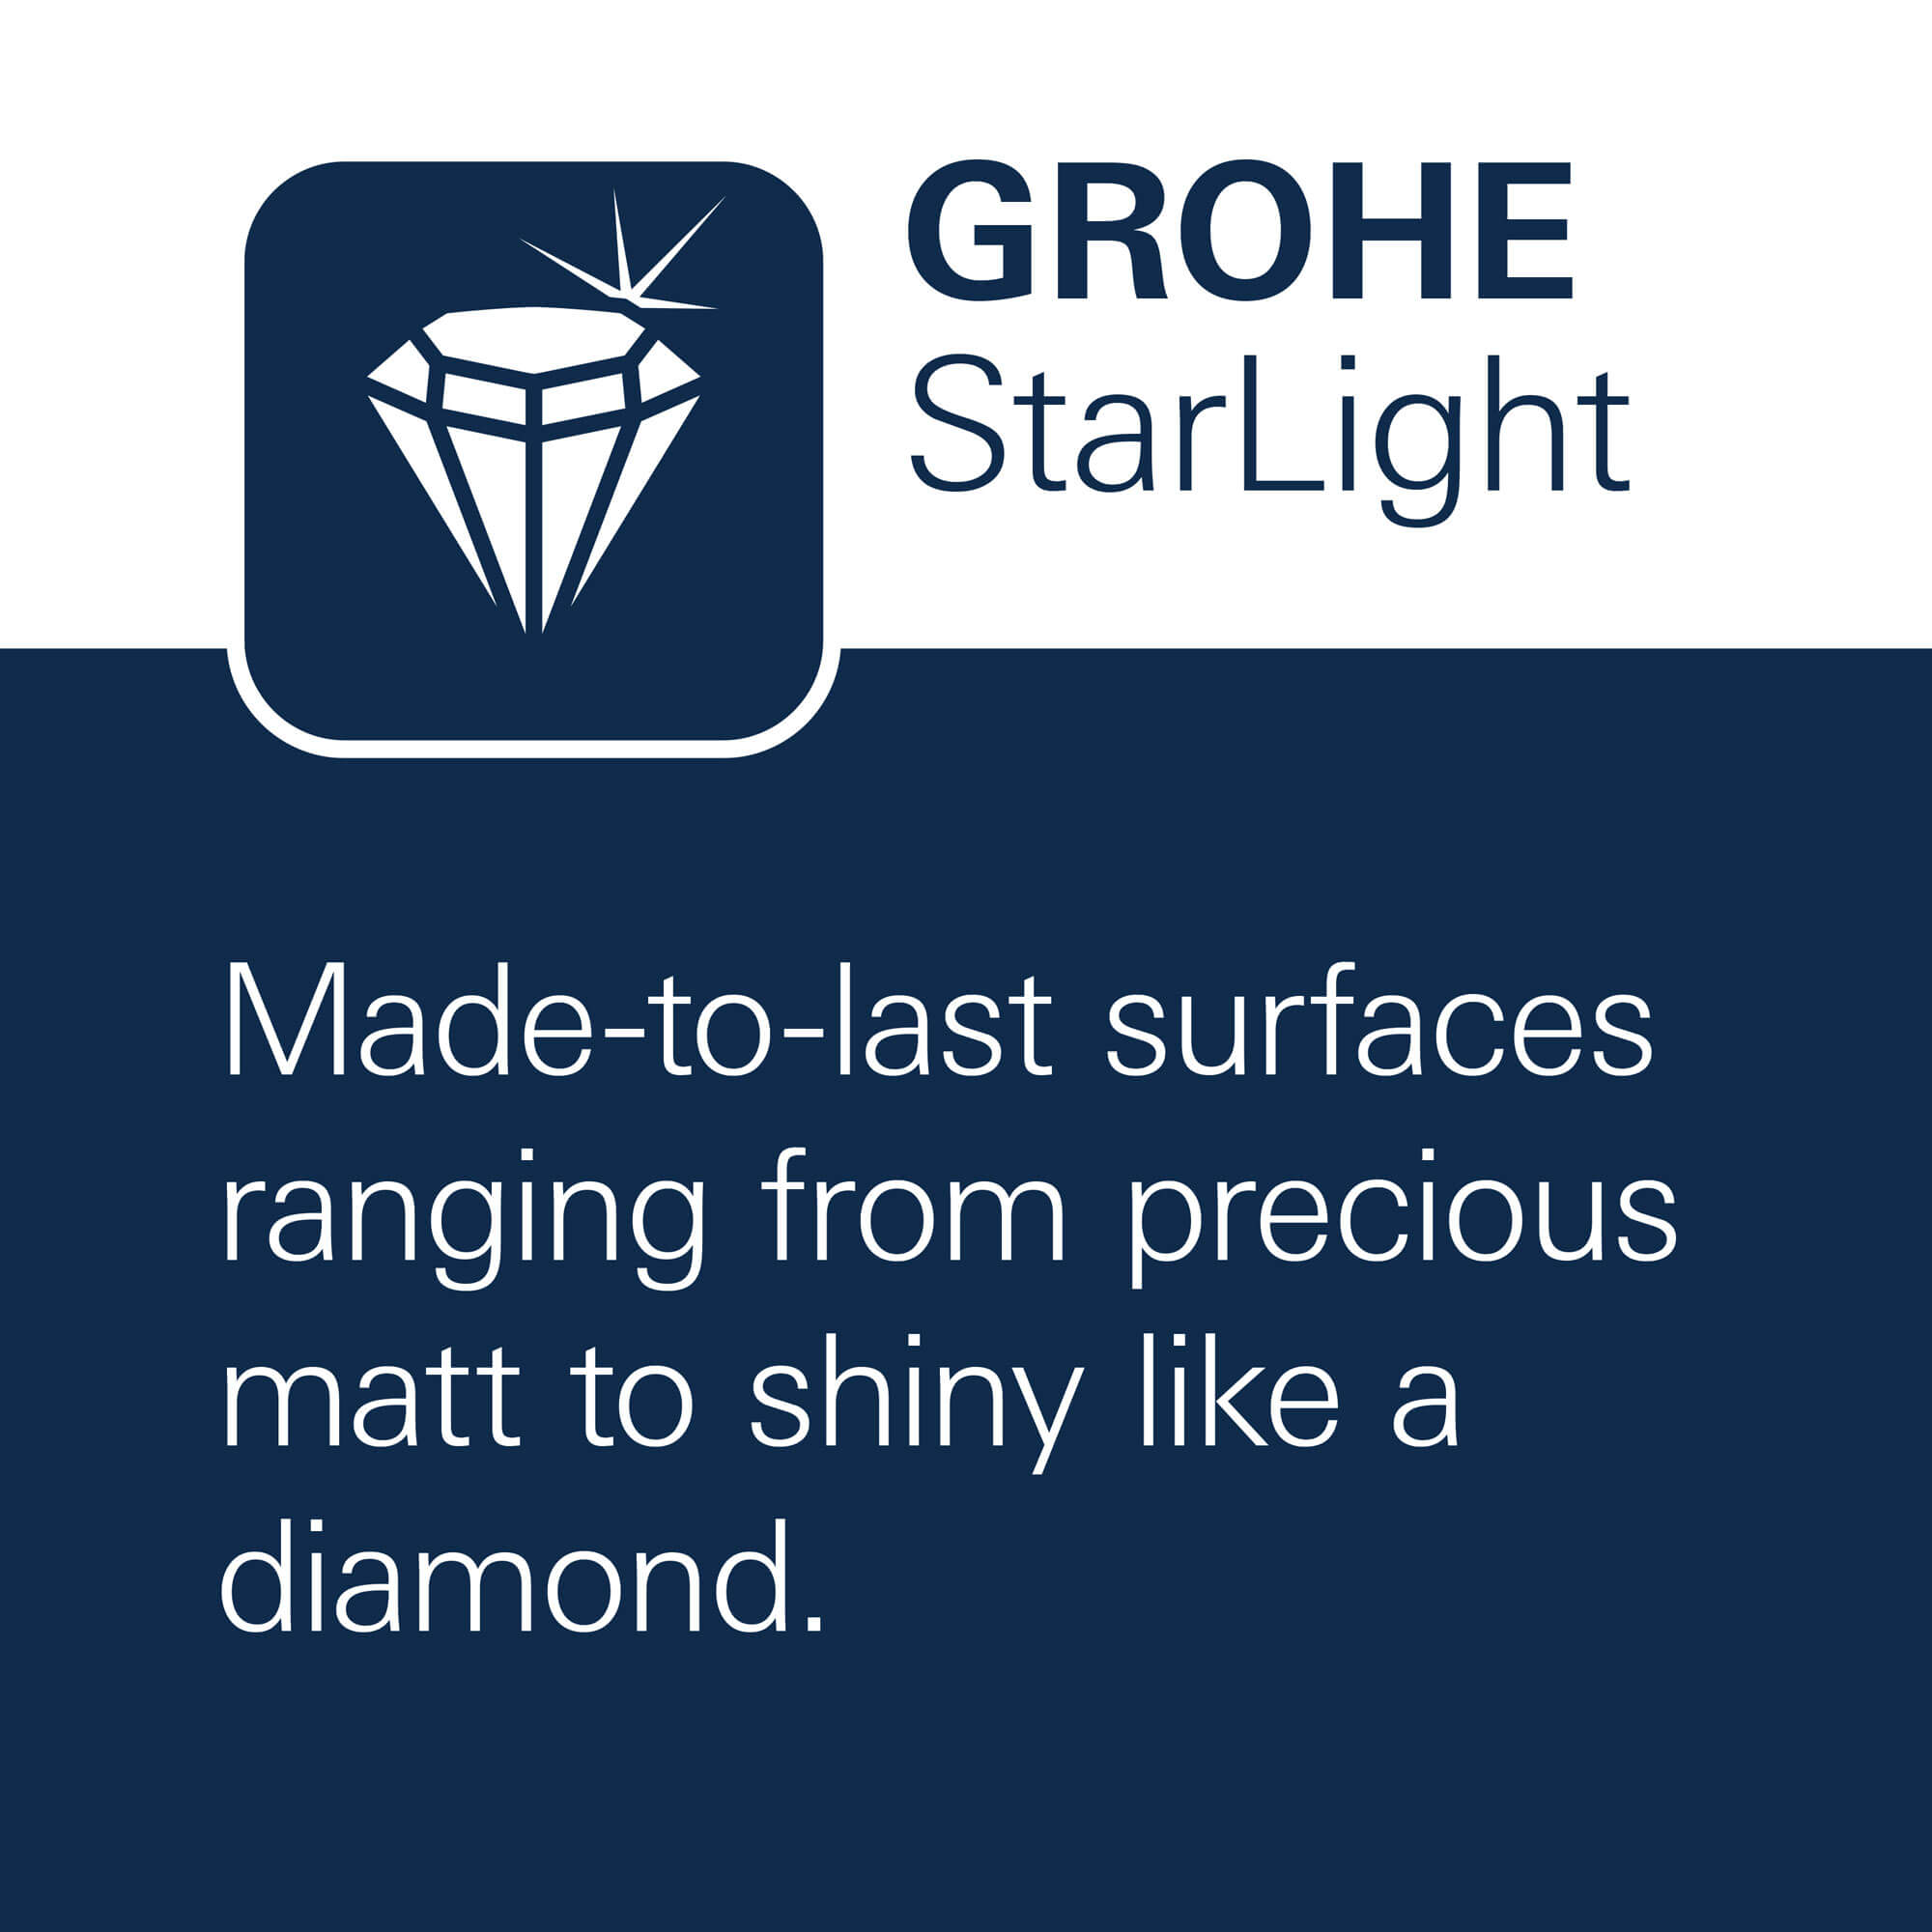 GROHE StarLight - Surfaces faites jusqu'à la dernière, allant du mat précieux au brillant comme un diamant.